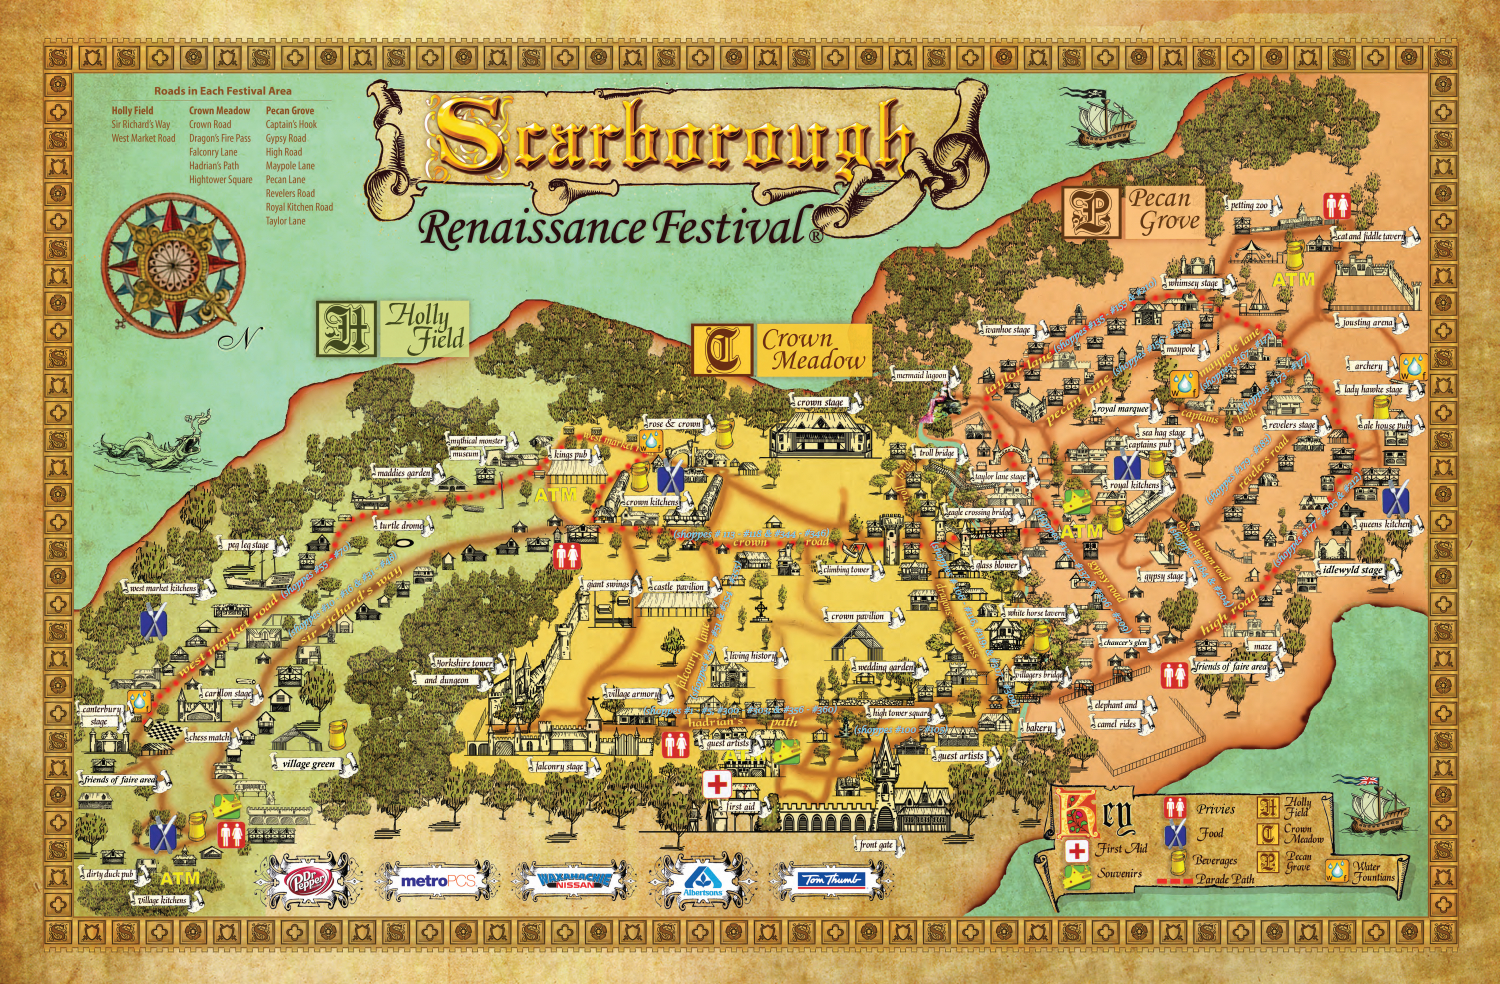 Festival Map - Scarborough Renaissance Festival | Texas - Texas Renaissance Festival Map